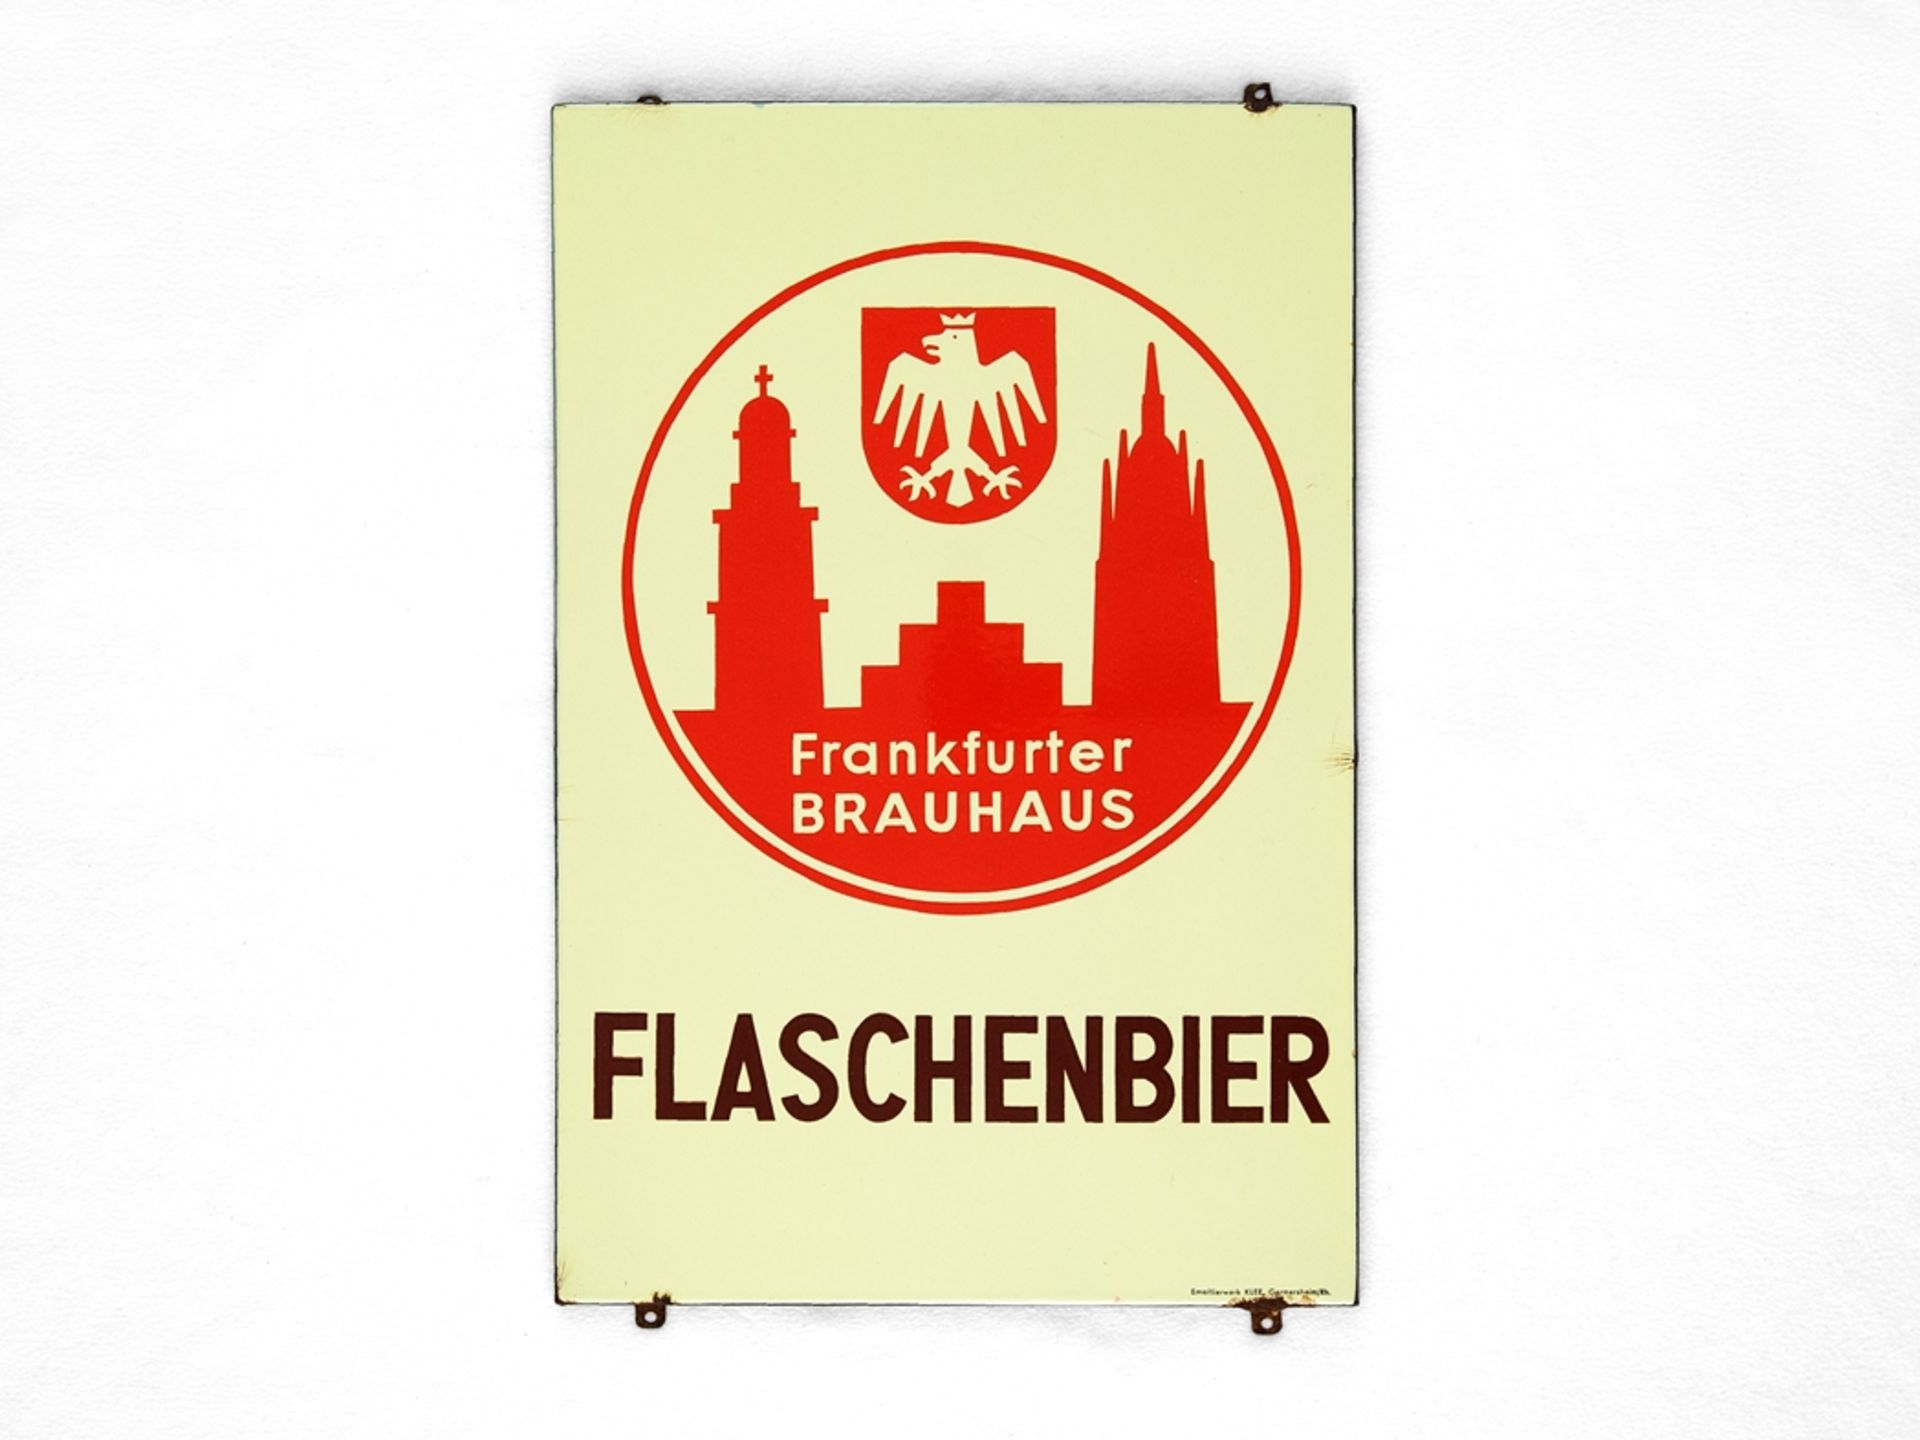 Enamel sign Frankfurter Brauhaus Flaschenbier, around 1950 - Image 7 of 7